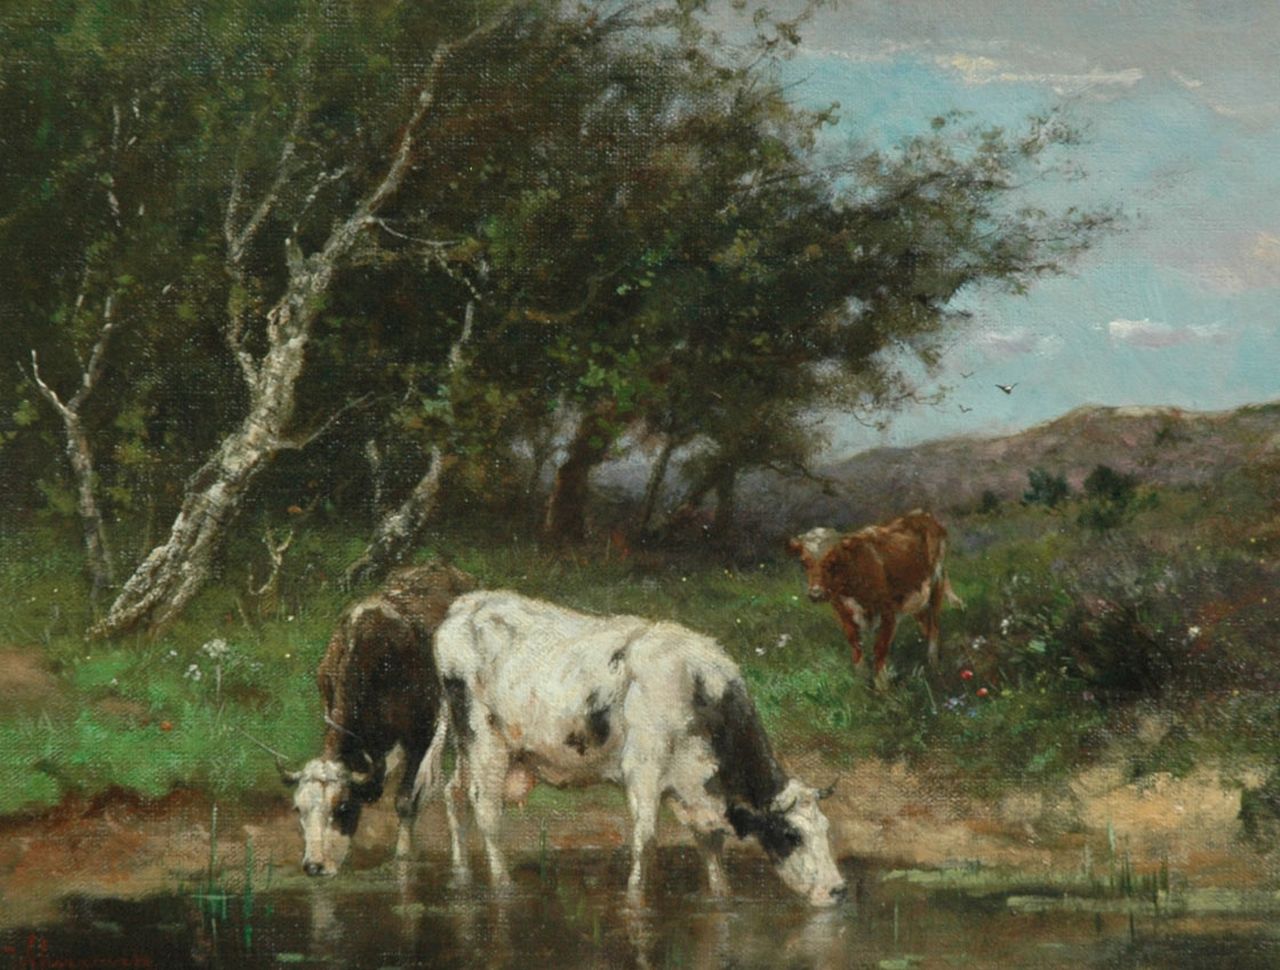 Scherrewitz J.F.C.  | Johan Frederik Cornelis Scherrewitz, Watering cows, Öl auf Leinwand 30,5 x 40,2 cm, signed l.l.